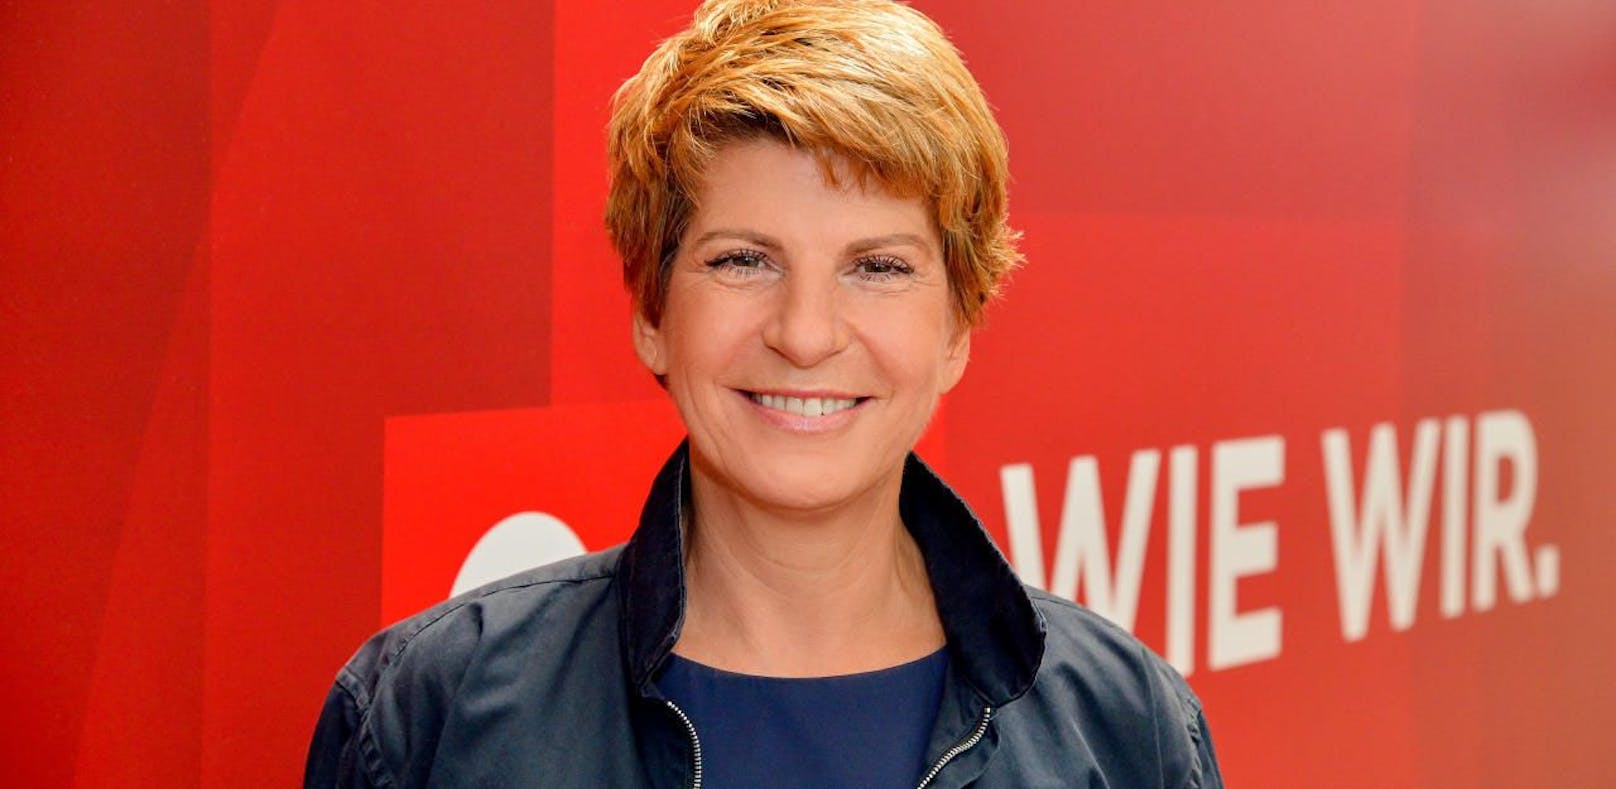 ORF Geschäftsführung Dr. Brigitte Wolf, Landesdirektorin des ORF Wien
